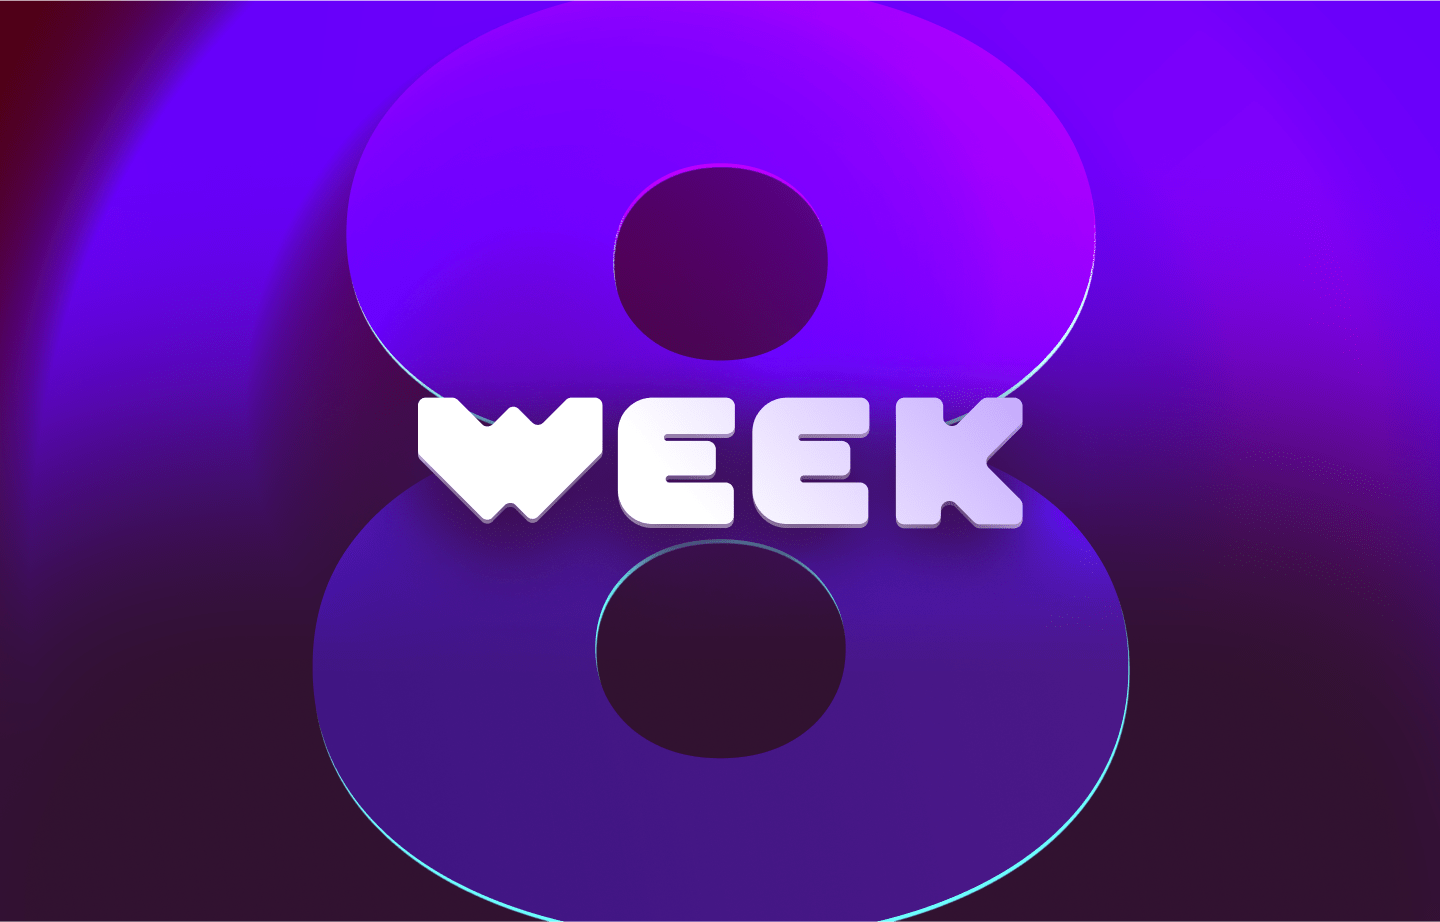 This week in web3 #8